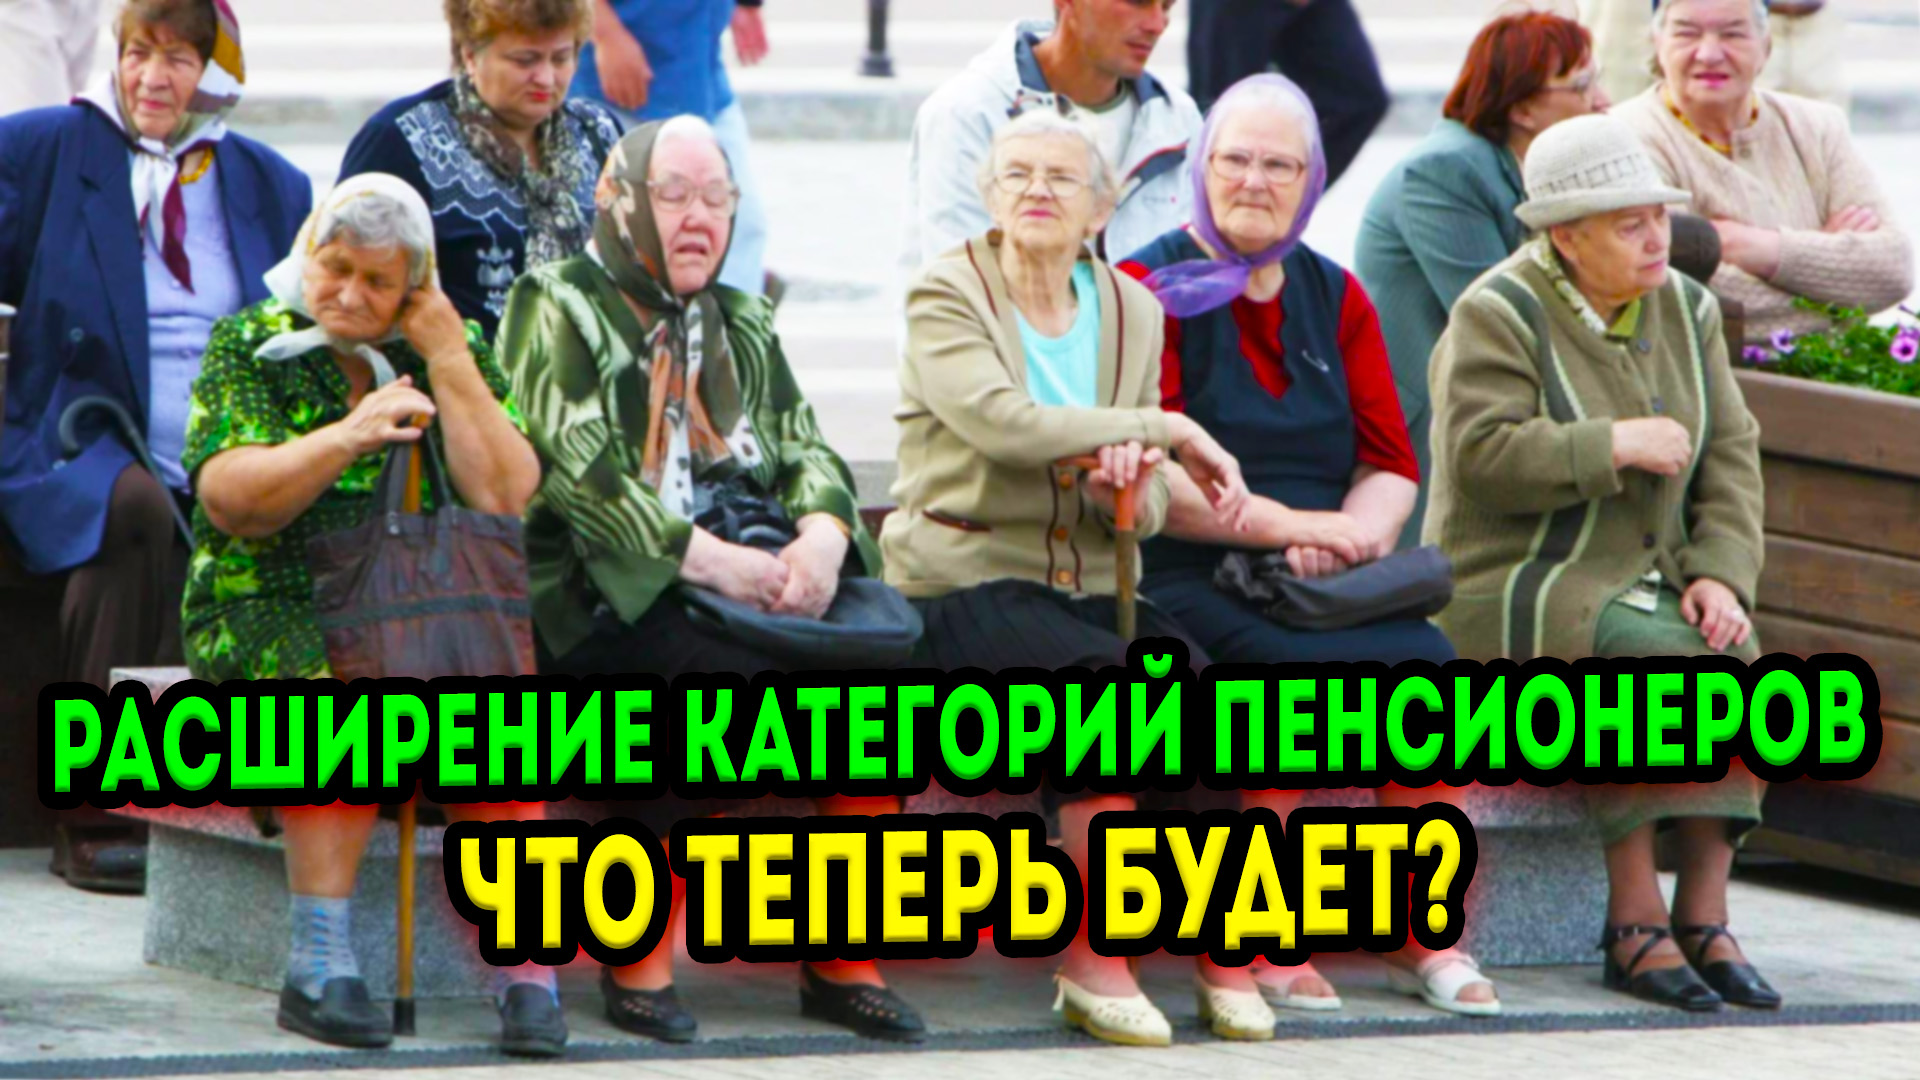 Каким категориям пенсионеров добавят. Категории пенсионеров в России. Смешные пенсионеры. Пенсионеры за пенсией. Приколы про пенсионеров.